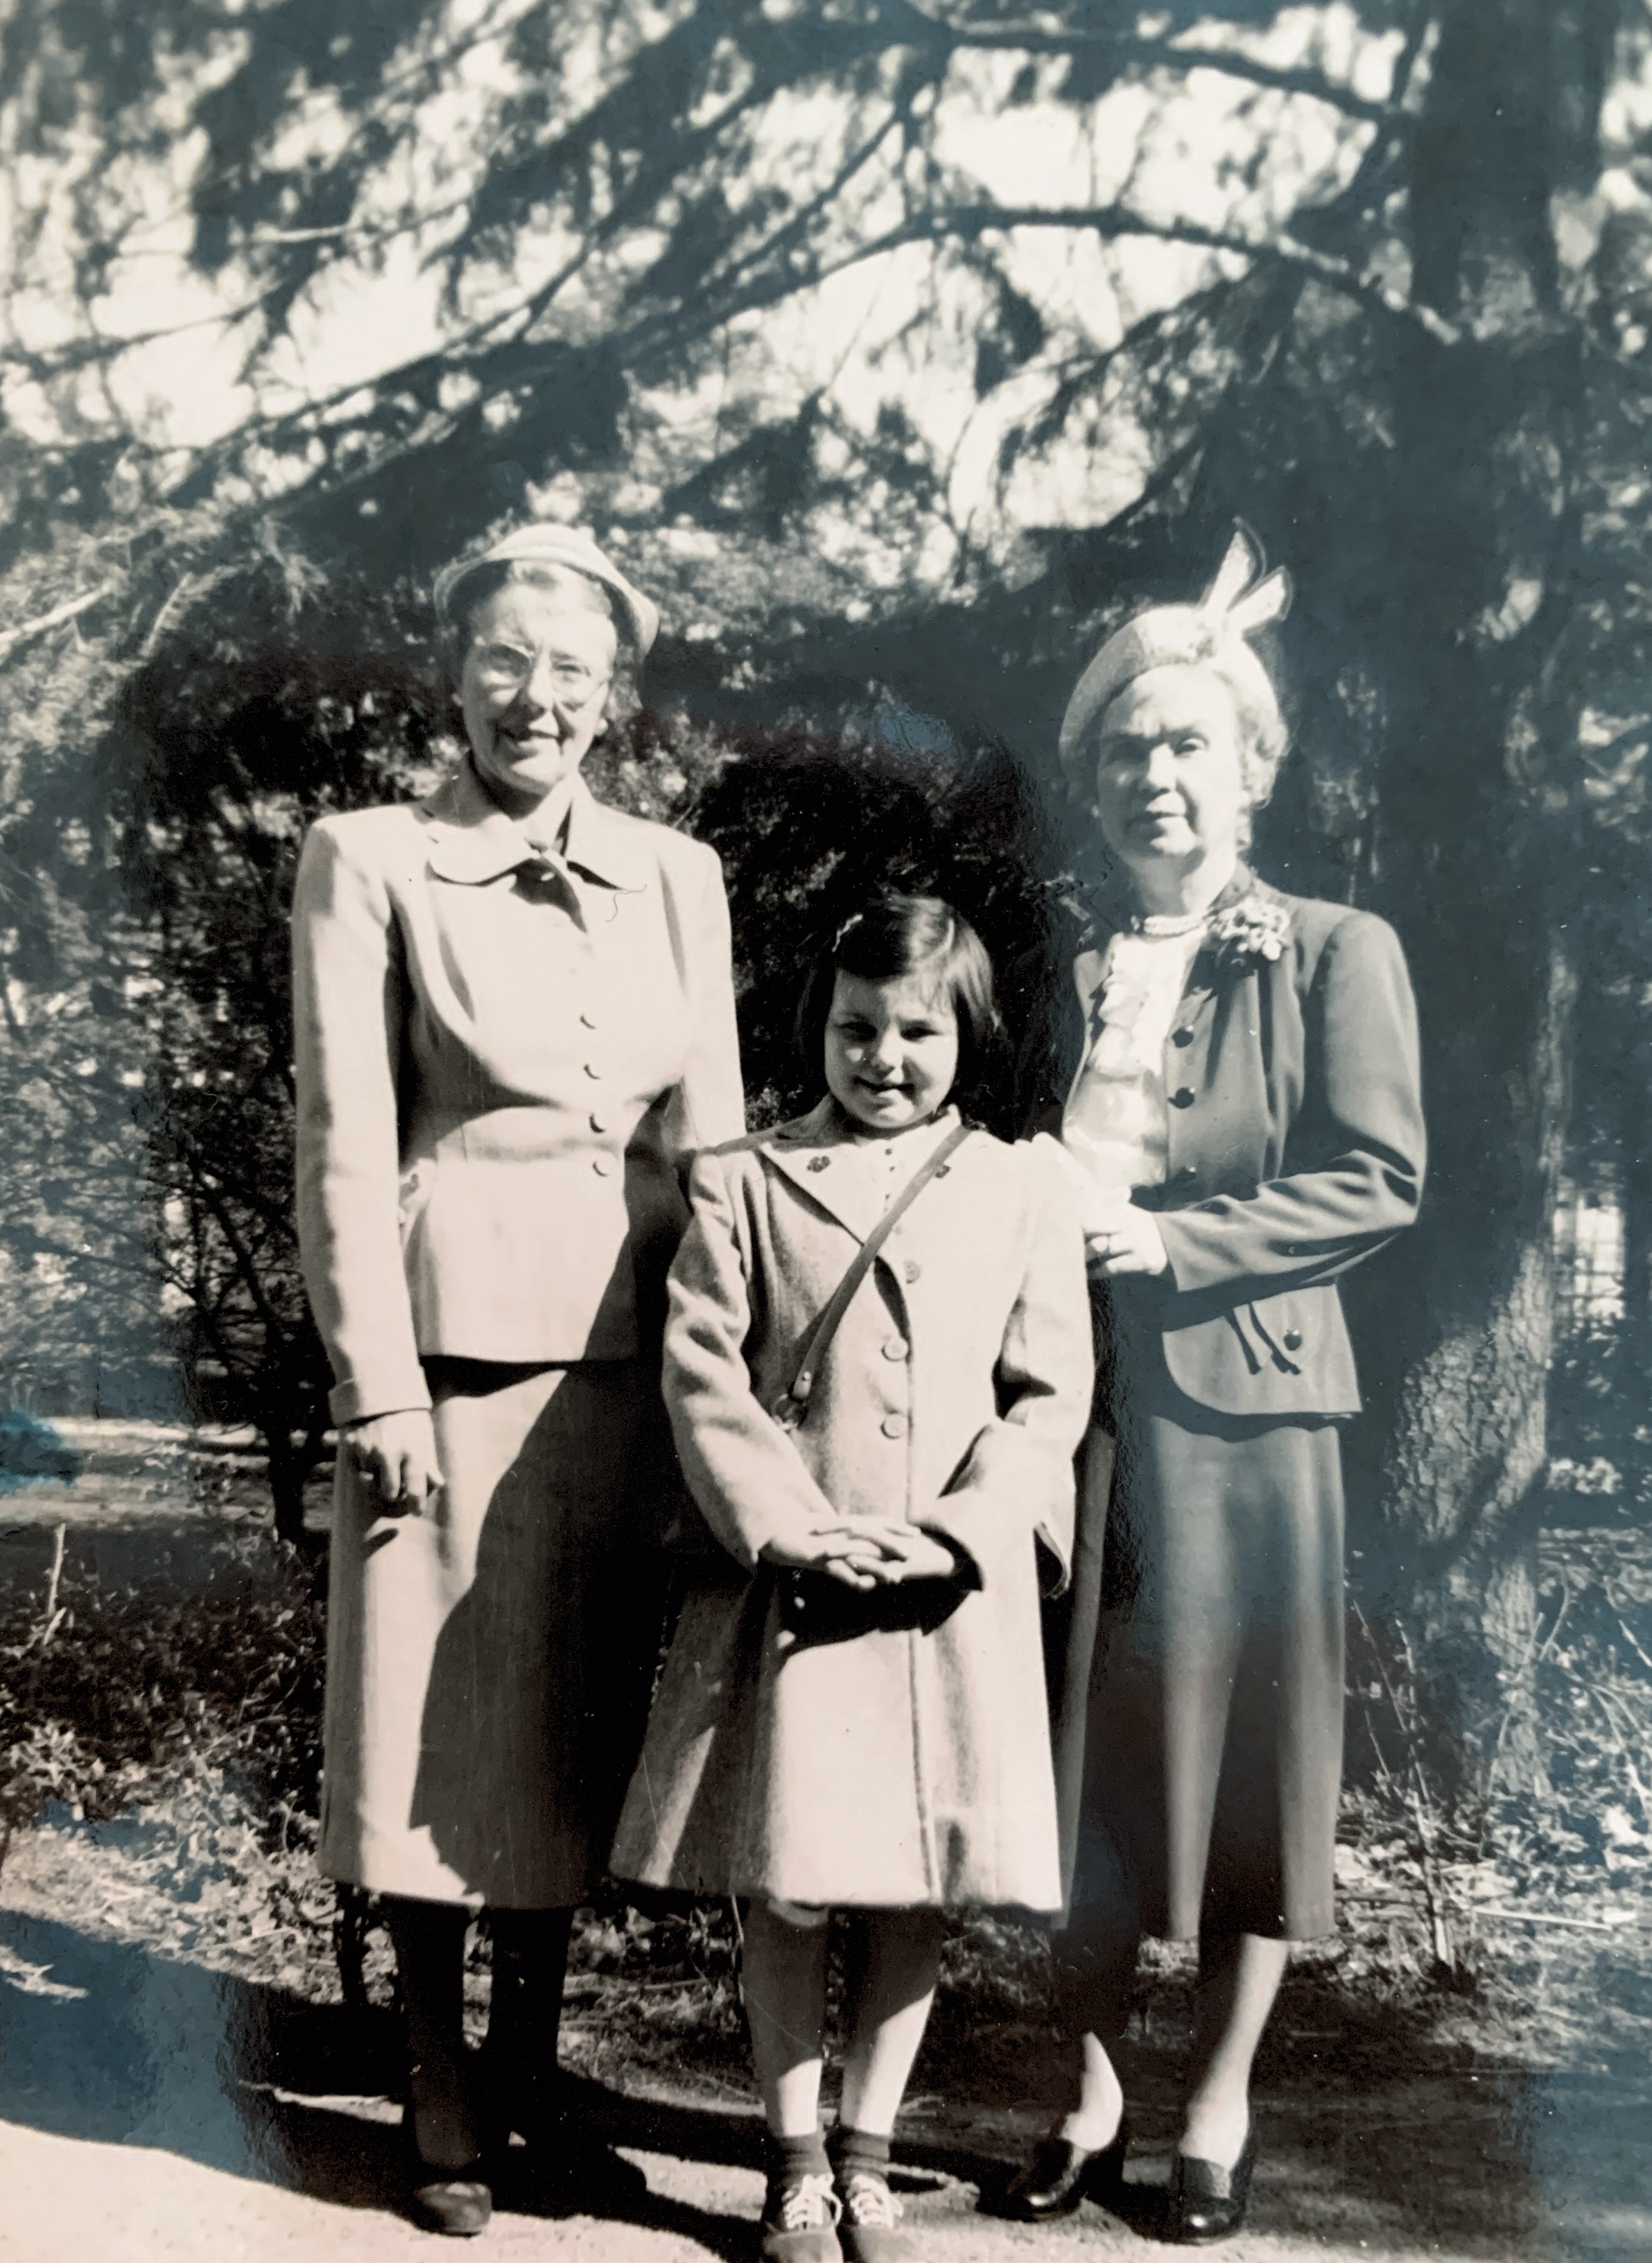 “Taken May 1953
Jean, Anne, Barbara Little”